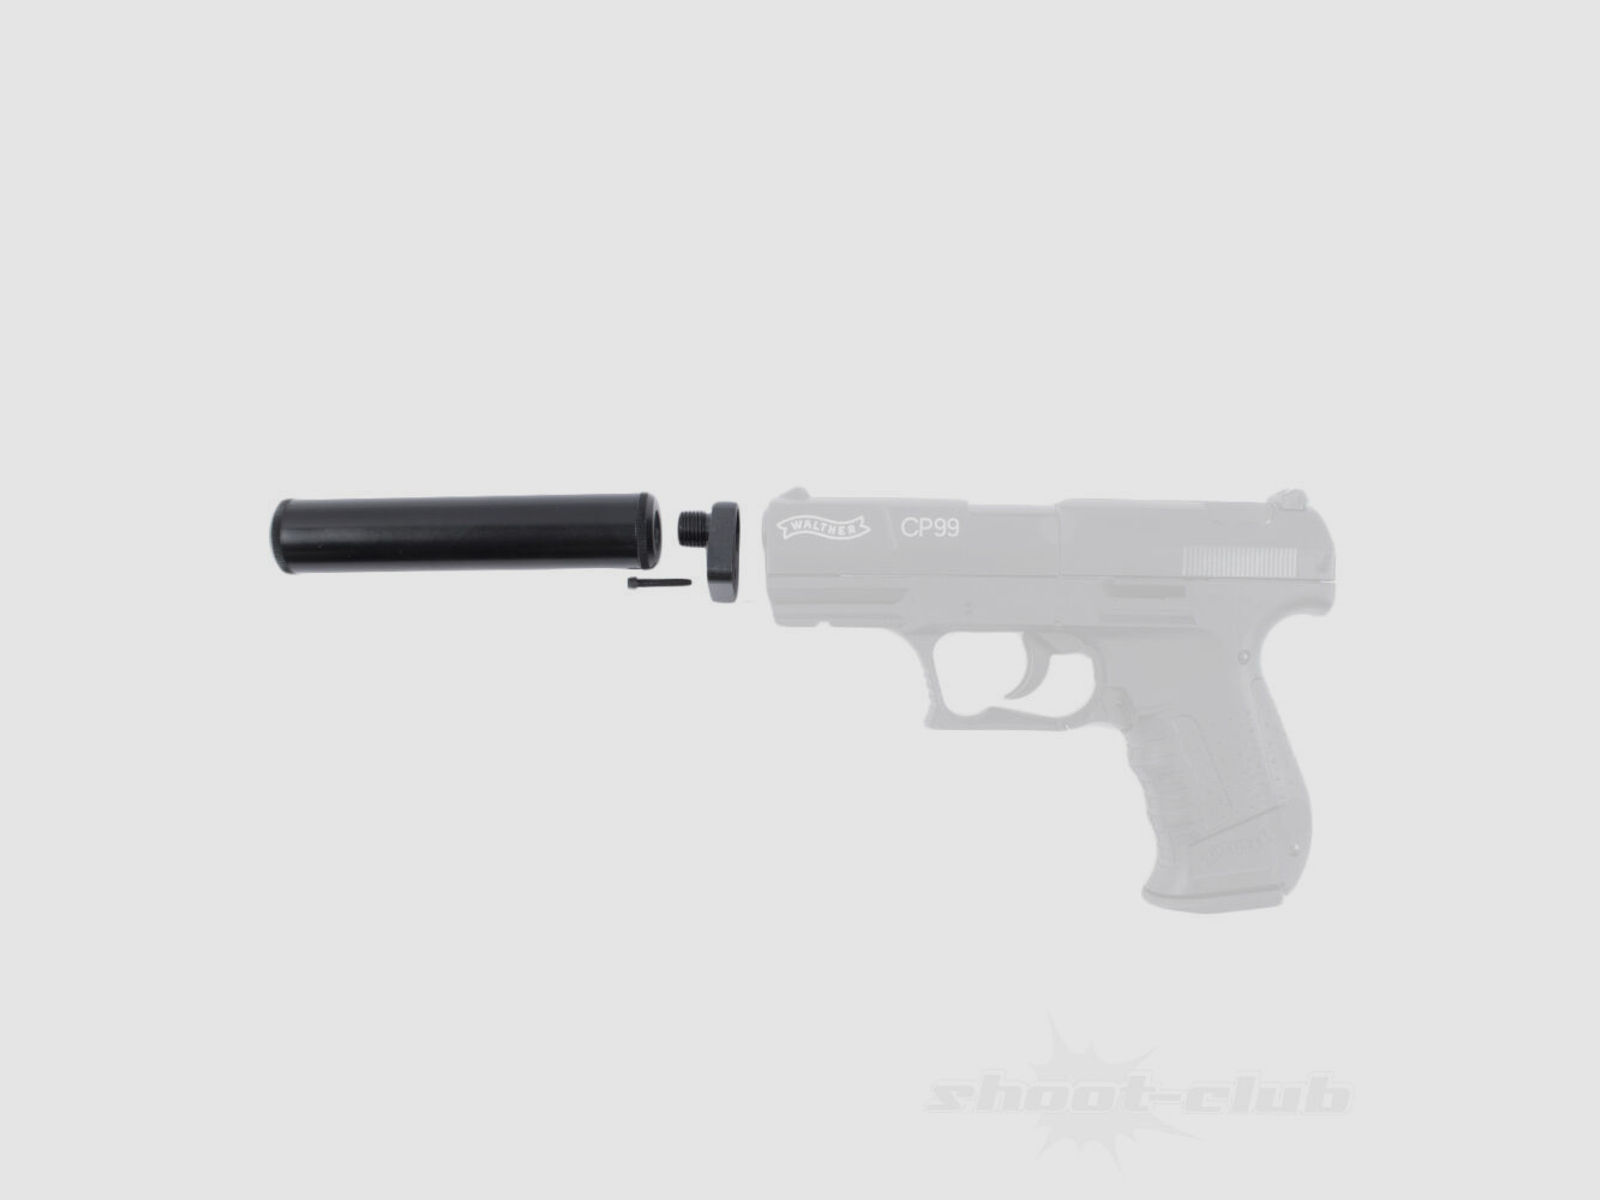 shoXx Schalldämpfer + Adapter für WaltherCP99, NightHawk, Umarex CPS Co2 Pistolen